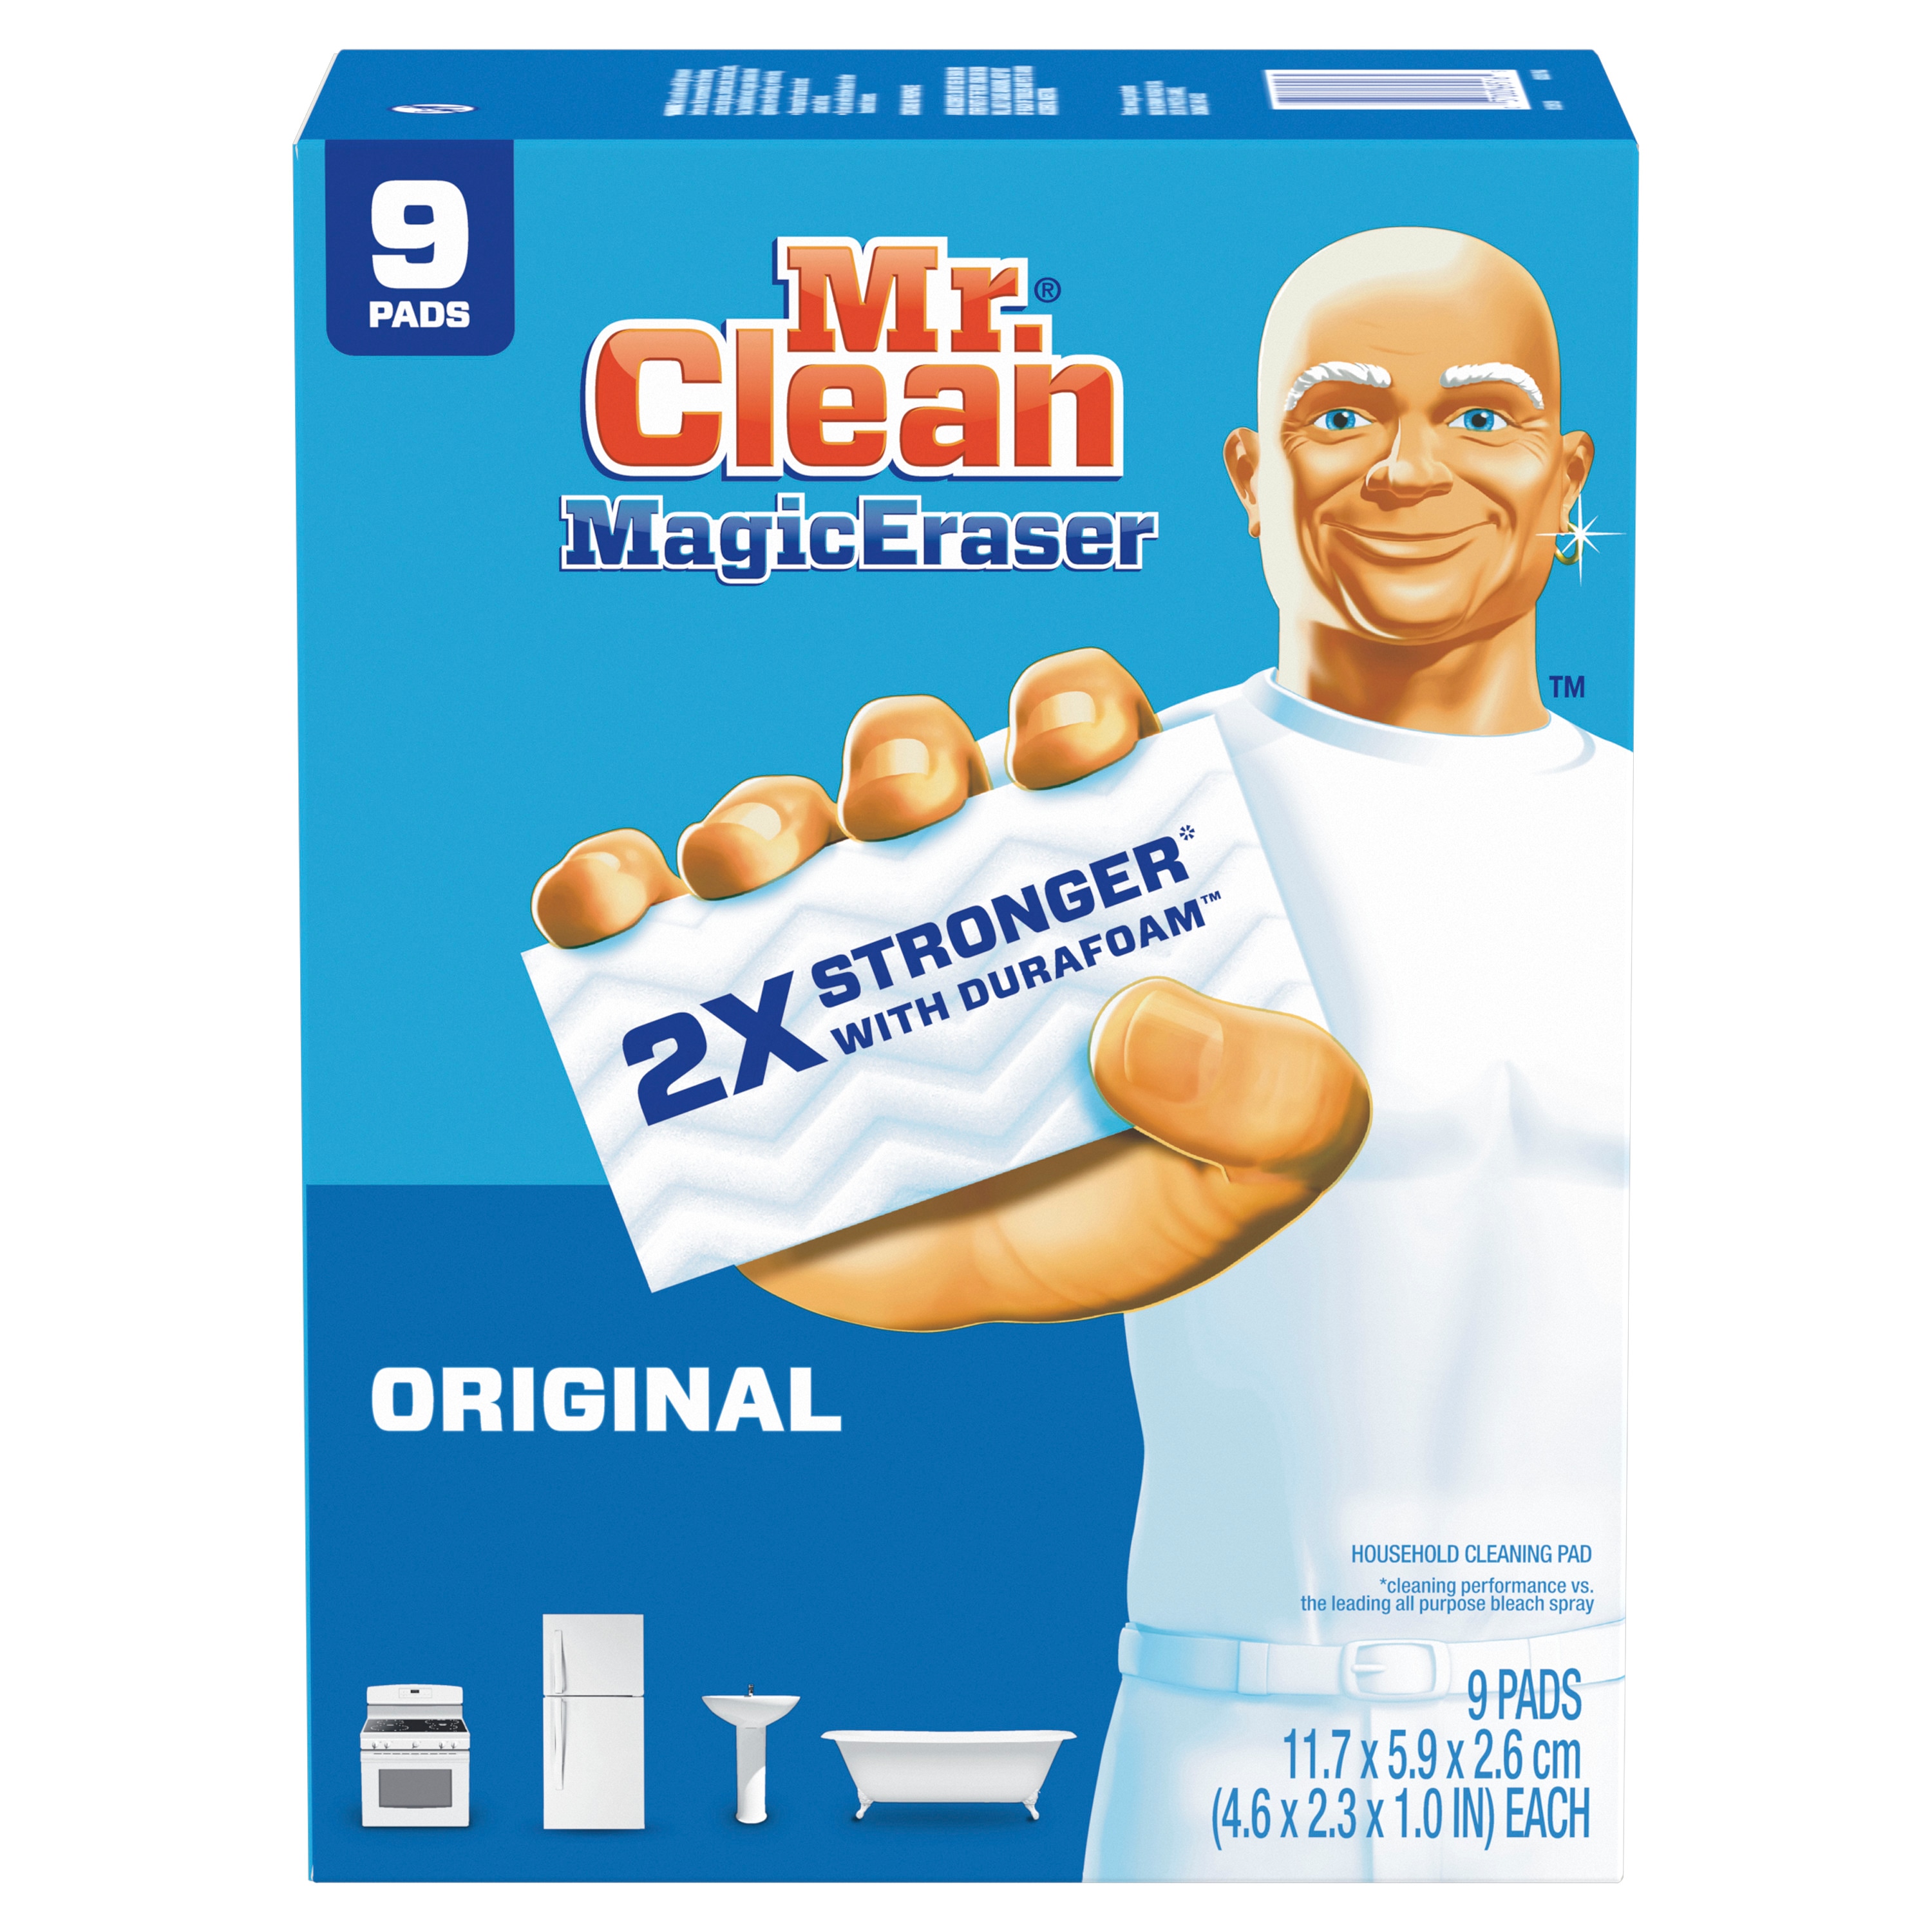 Chất làm sạch đa năng của Mr. Clean Magic Eraser là sản phẩm tuyệt vời giúp bạn làm sạch những vết bẩn cứng đầu trên sàn nhà, tường, bàn ghế và nhiều vùng khác trong nhà. Hãy tự tin và cho phép Mr. Clean giúp bạn loại bỏ mọi dơ bẩn.